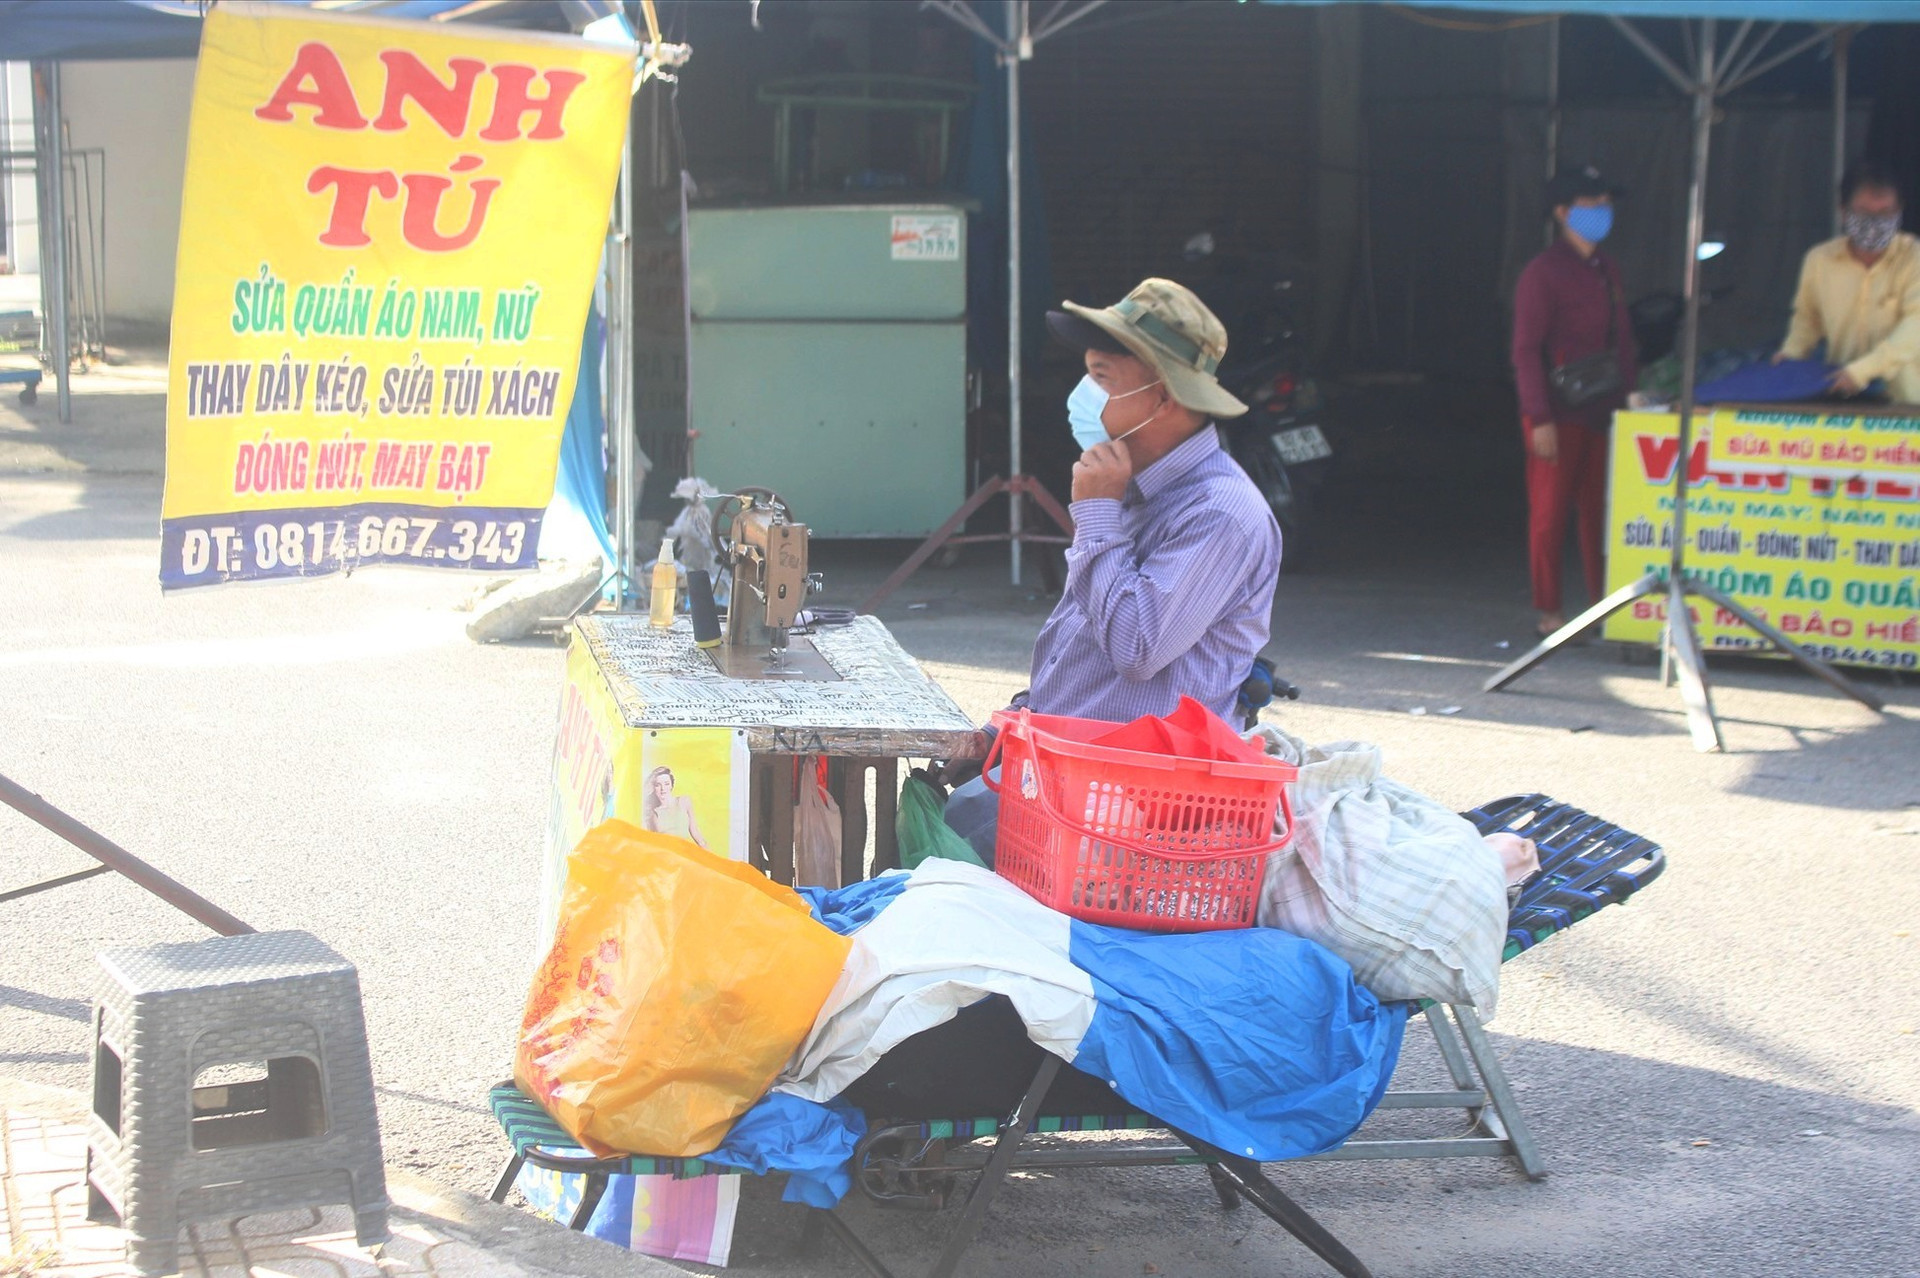 Người dân kinh doanh trở lại sau khi lệnh phong tỏa được dỡ bỏ.chợ Vườn Lài